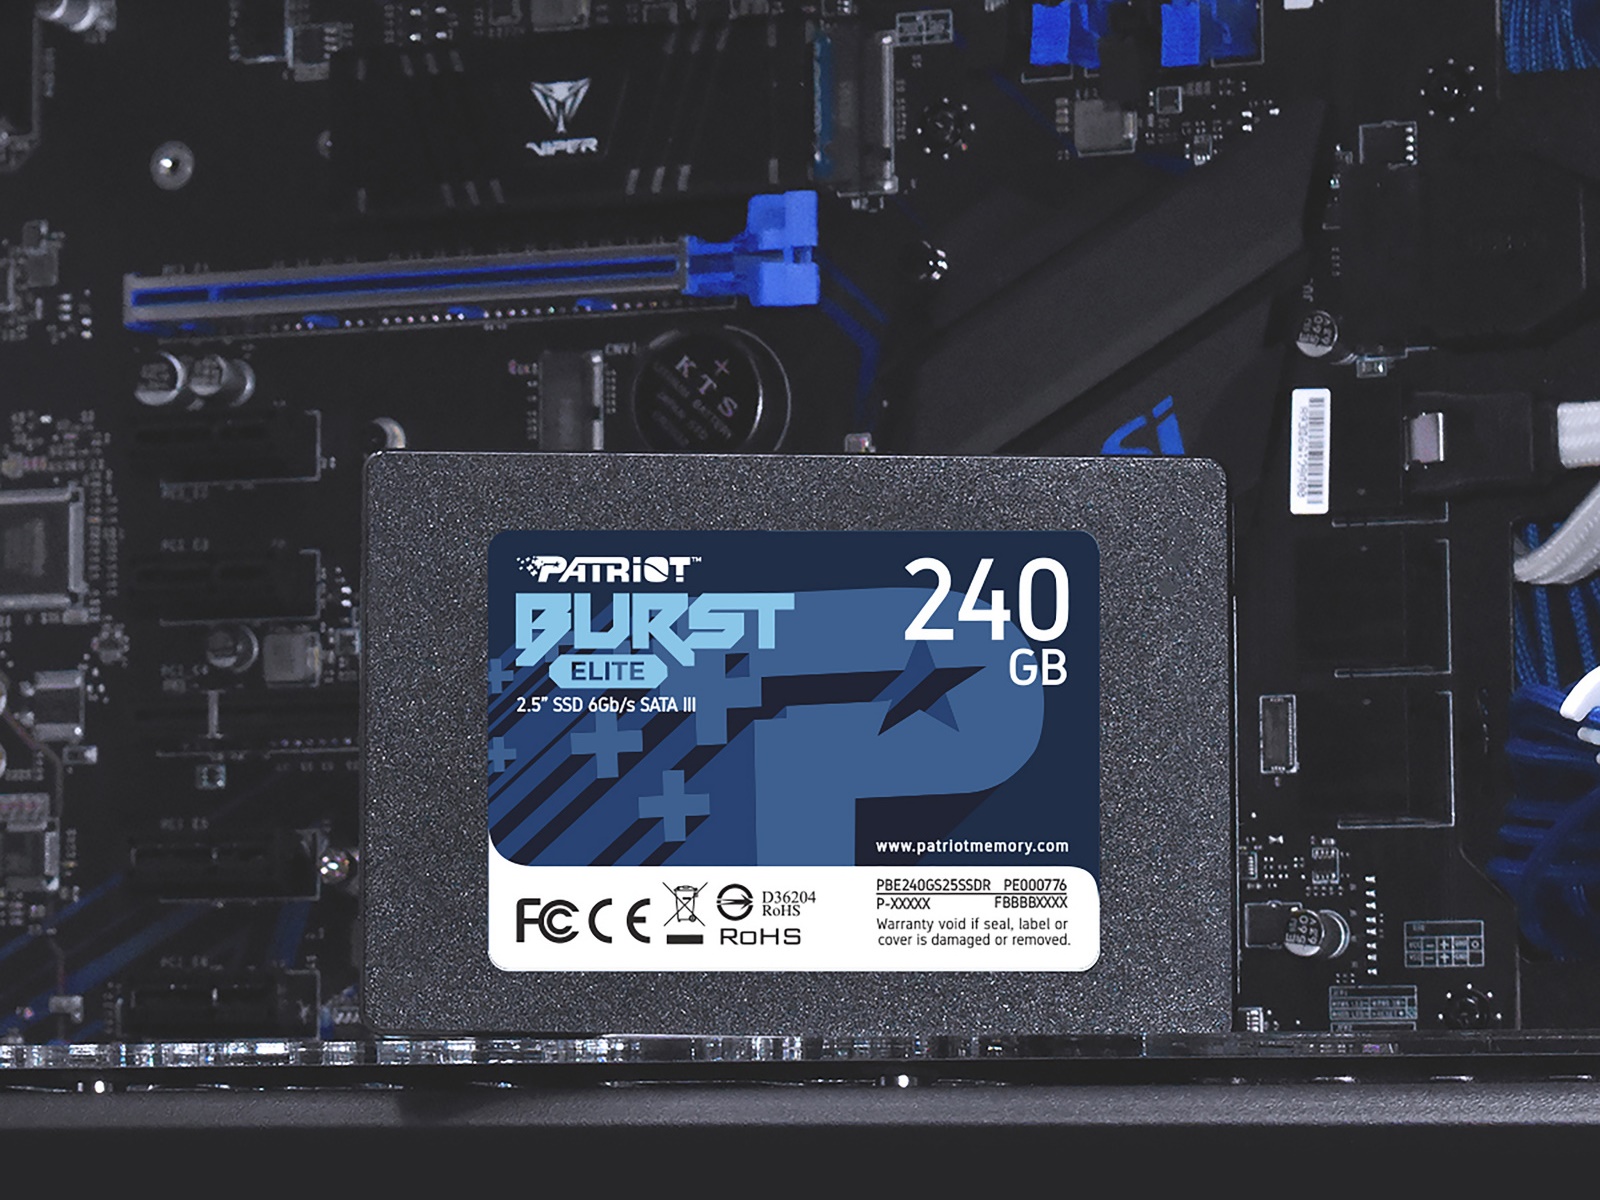 Interní SSD disk Patriot Burst Elite o kapacitě 240 GB nabízí vysoké přenosové rychlosti, aby zabránil zpomalování výkonu ze strany úložiště.